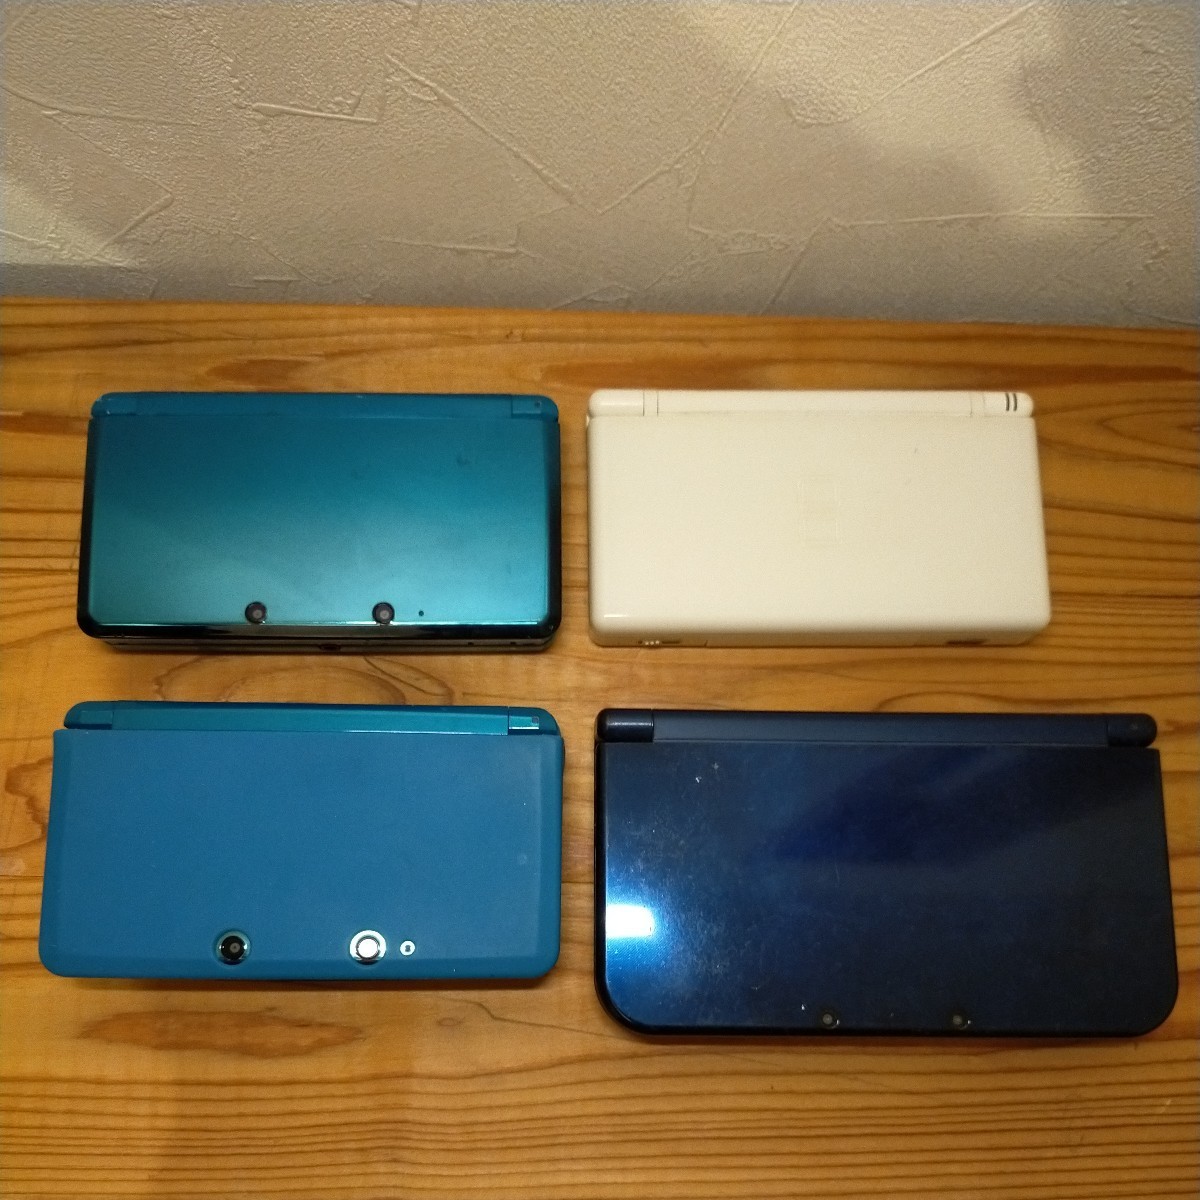 【お買い得】任天堂 Nintendo ゲーム機/3DSLLのメタリックブルー/DS lite 白/3DS ブルー3DS /ブルーカバー付/現状品_画像2